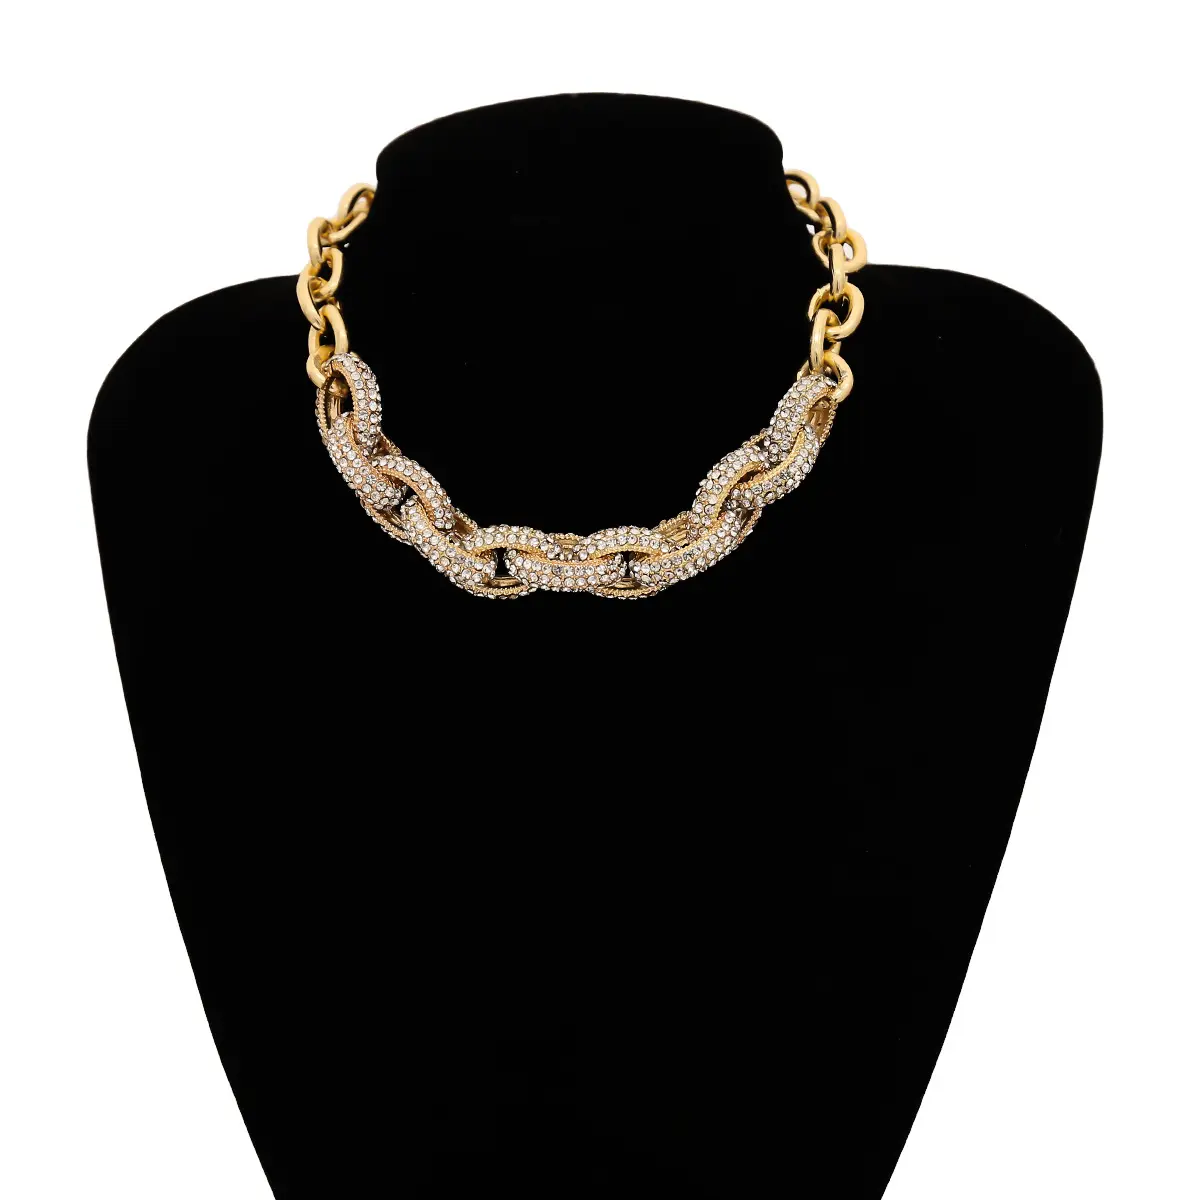 N069a colar feminino, colar grosso com corrente, versátil, de metal